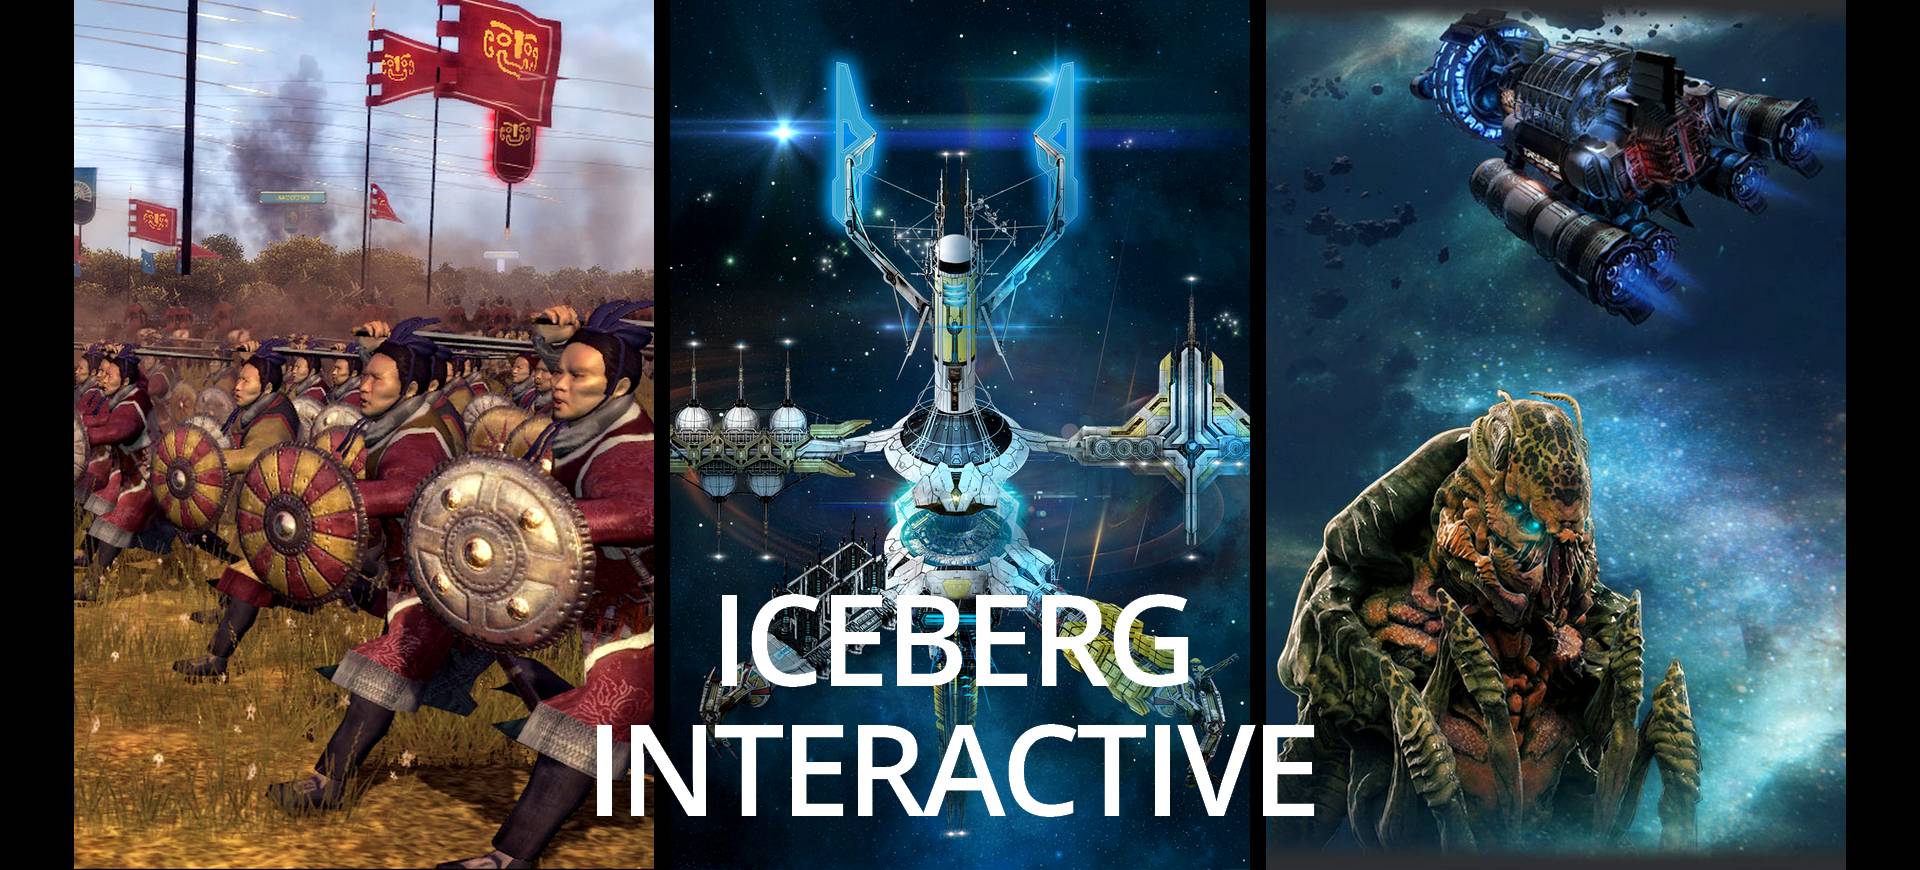 Gamescom 2015: Iceberg Interactive - Quân đoàn băng giá!